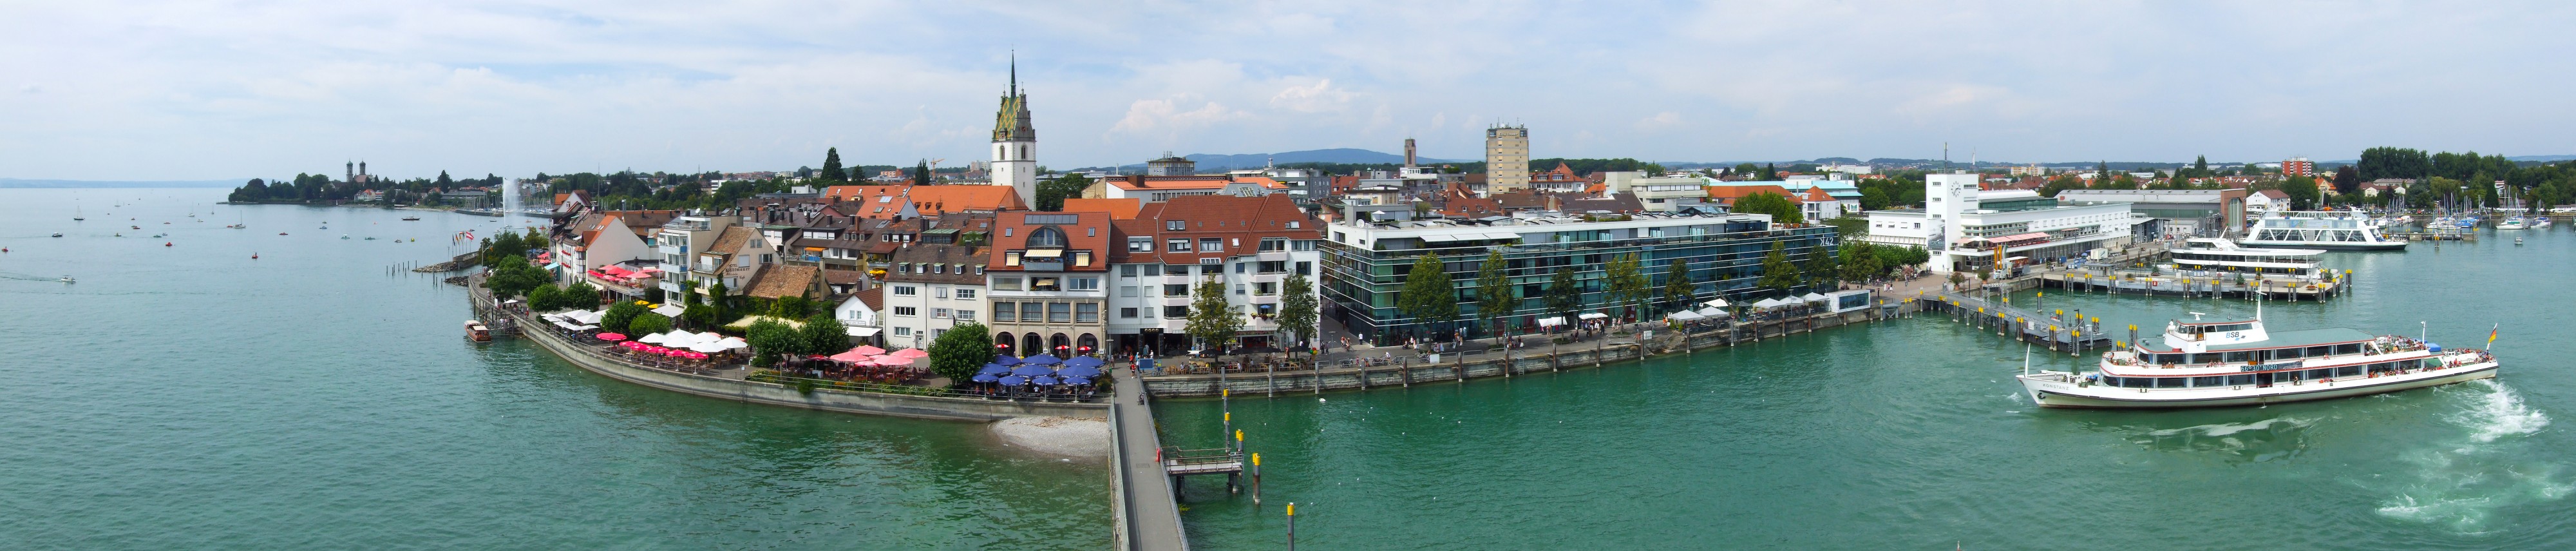 Friedrichshafen panorama